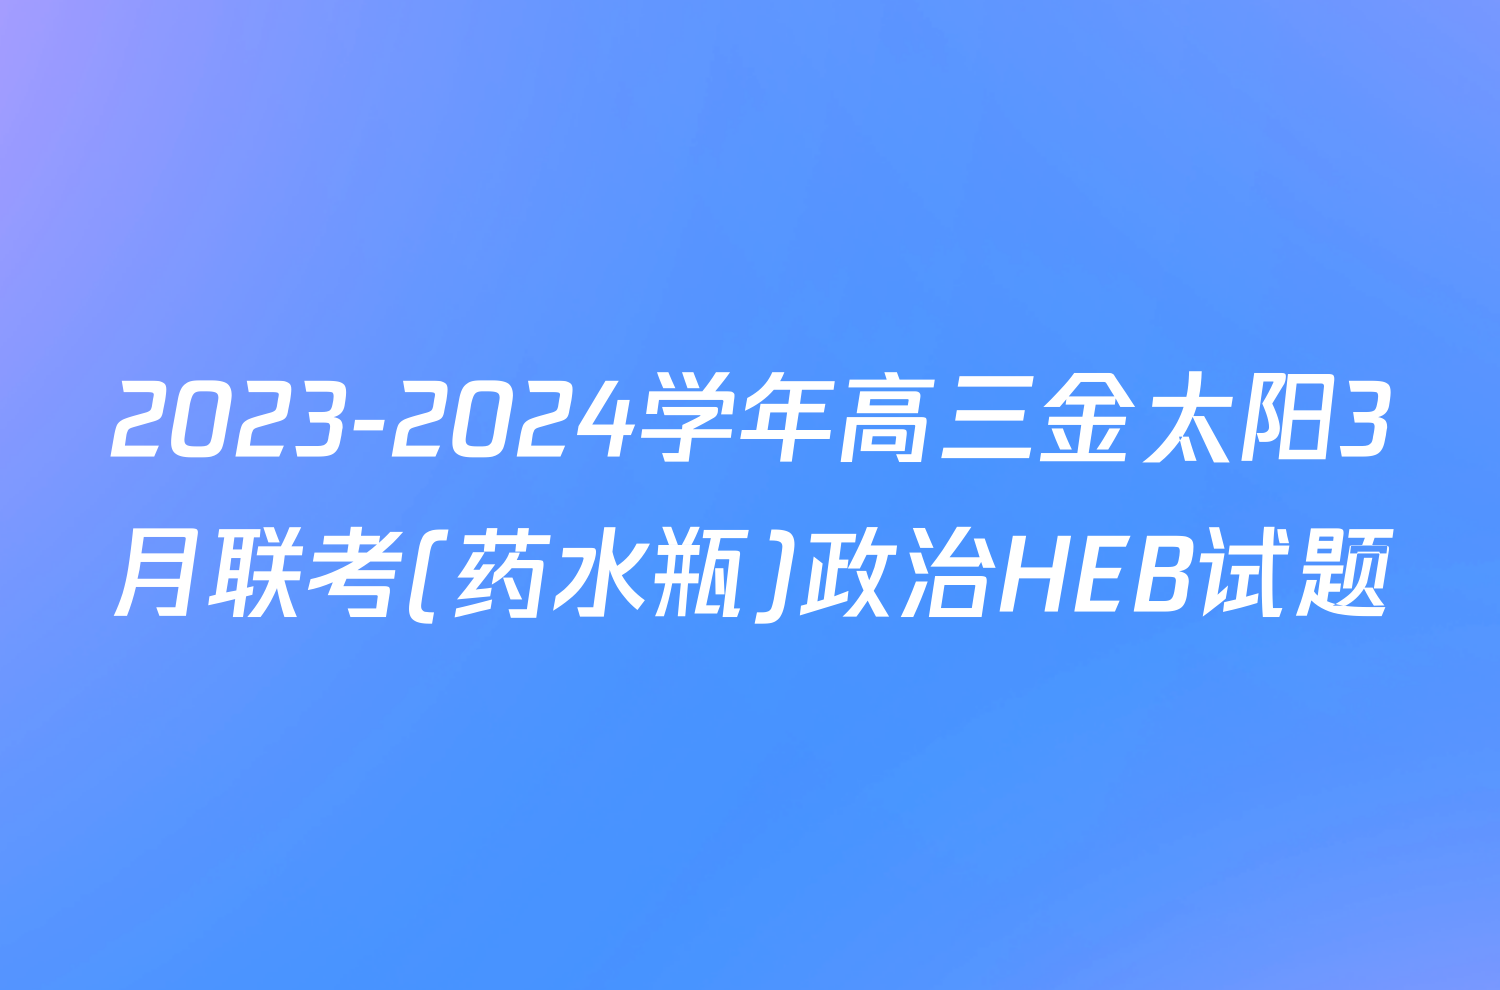 2023-2024学年高三金太阳3月联考(药水瓶)政治HEB试题